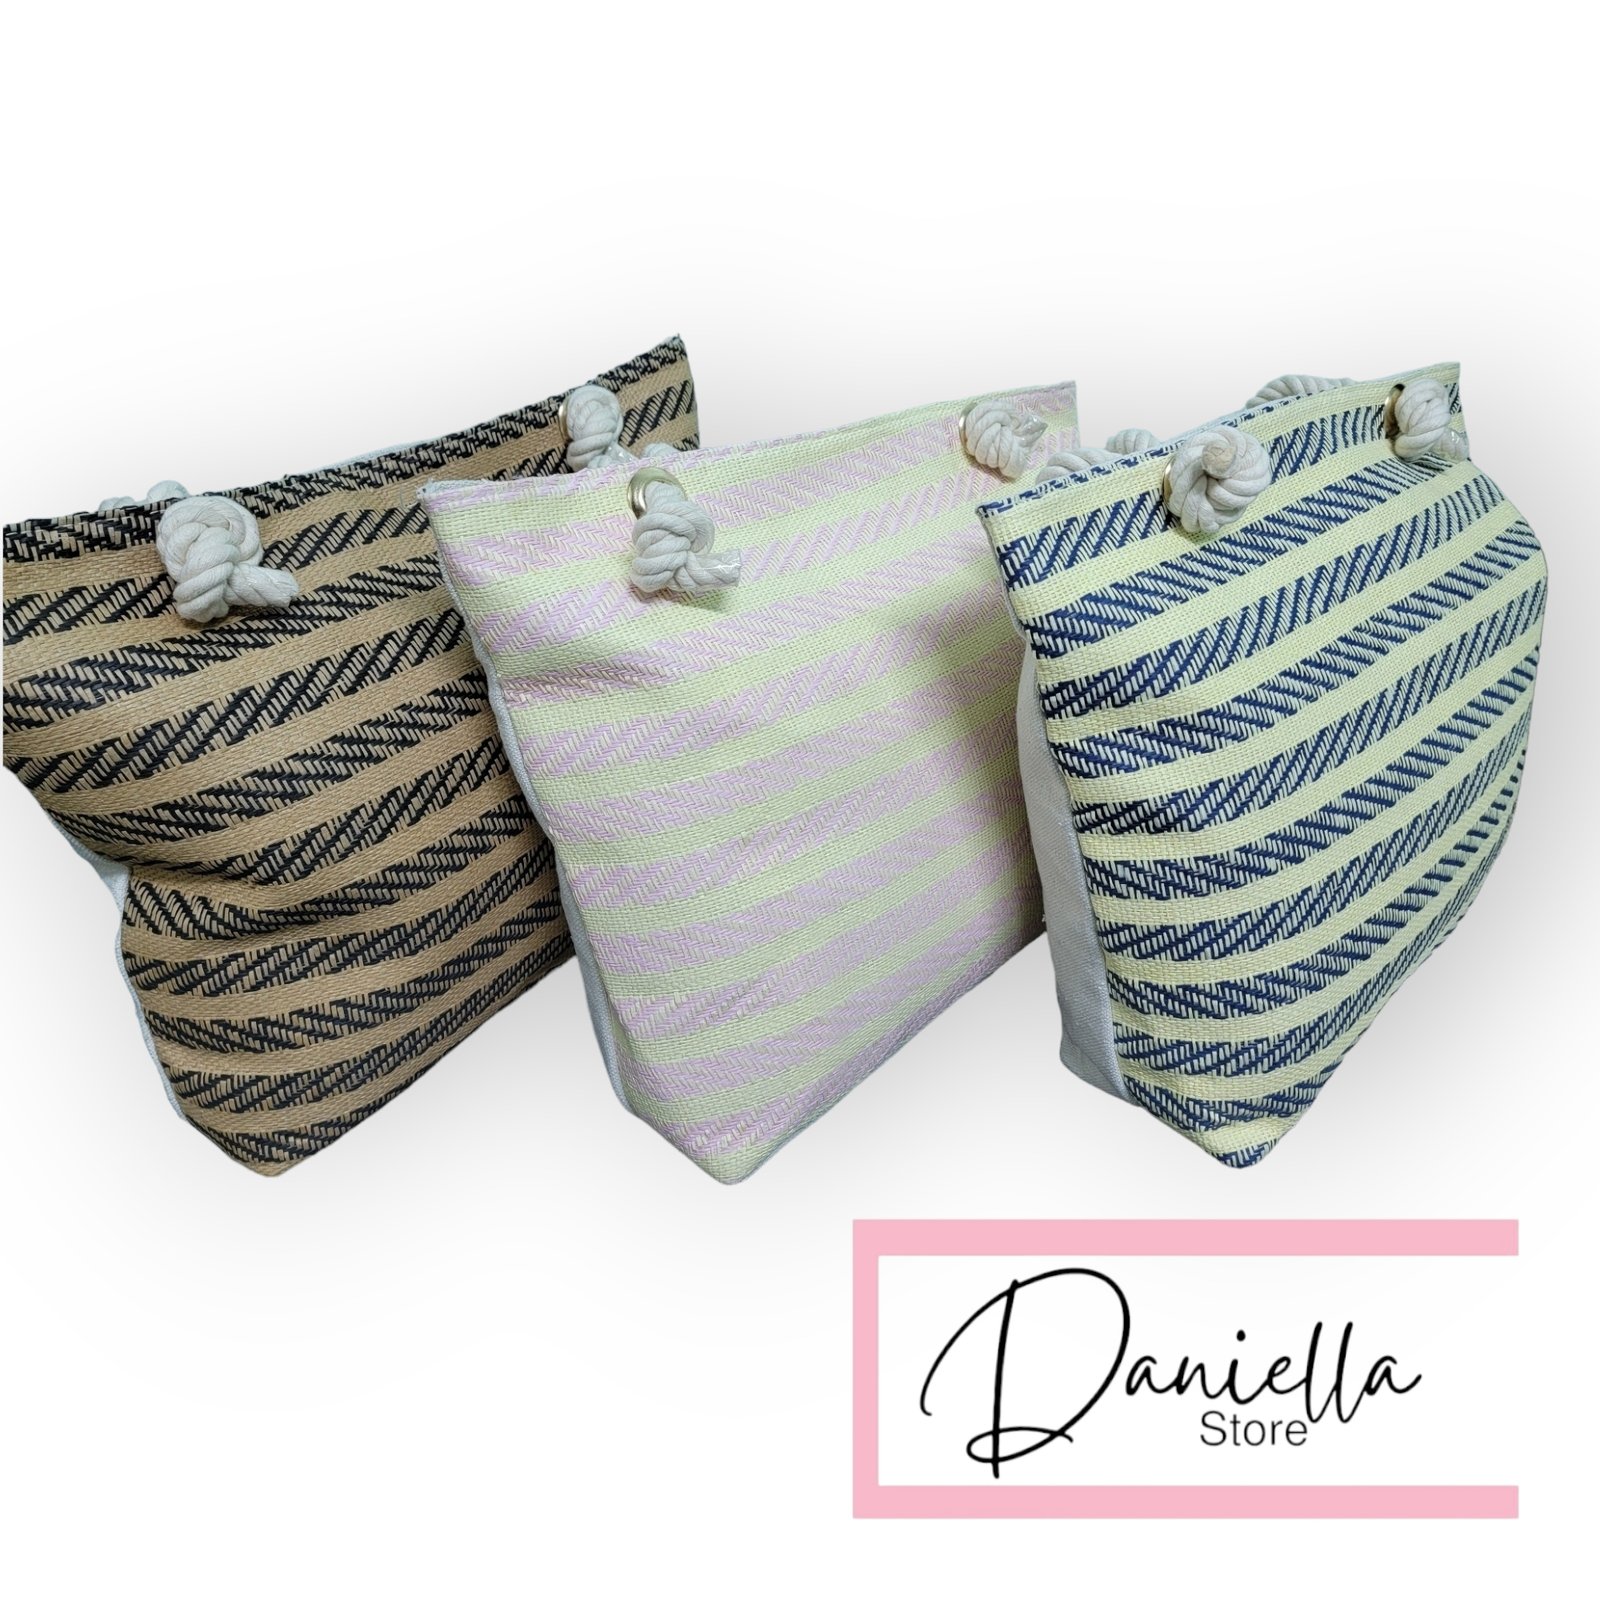 Summer Color Bag – Daniella store